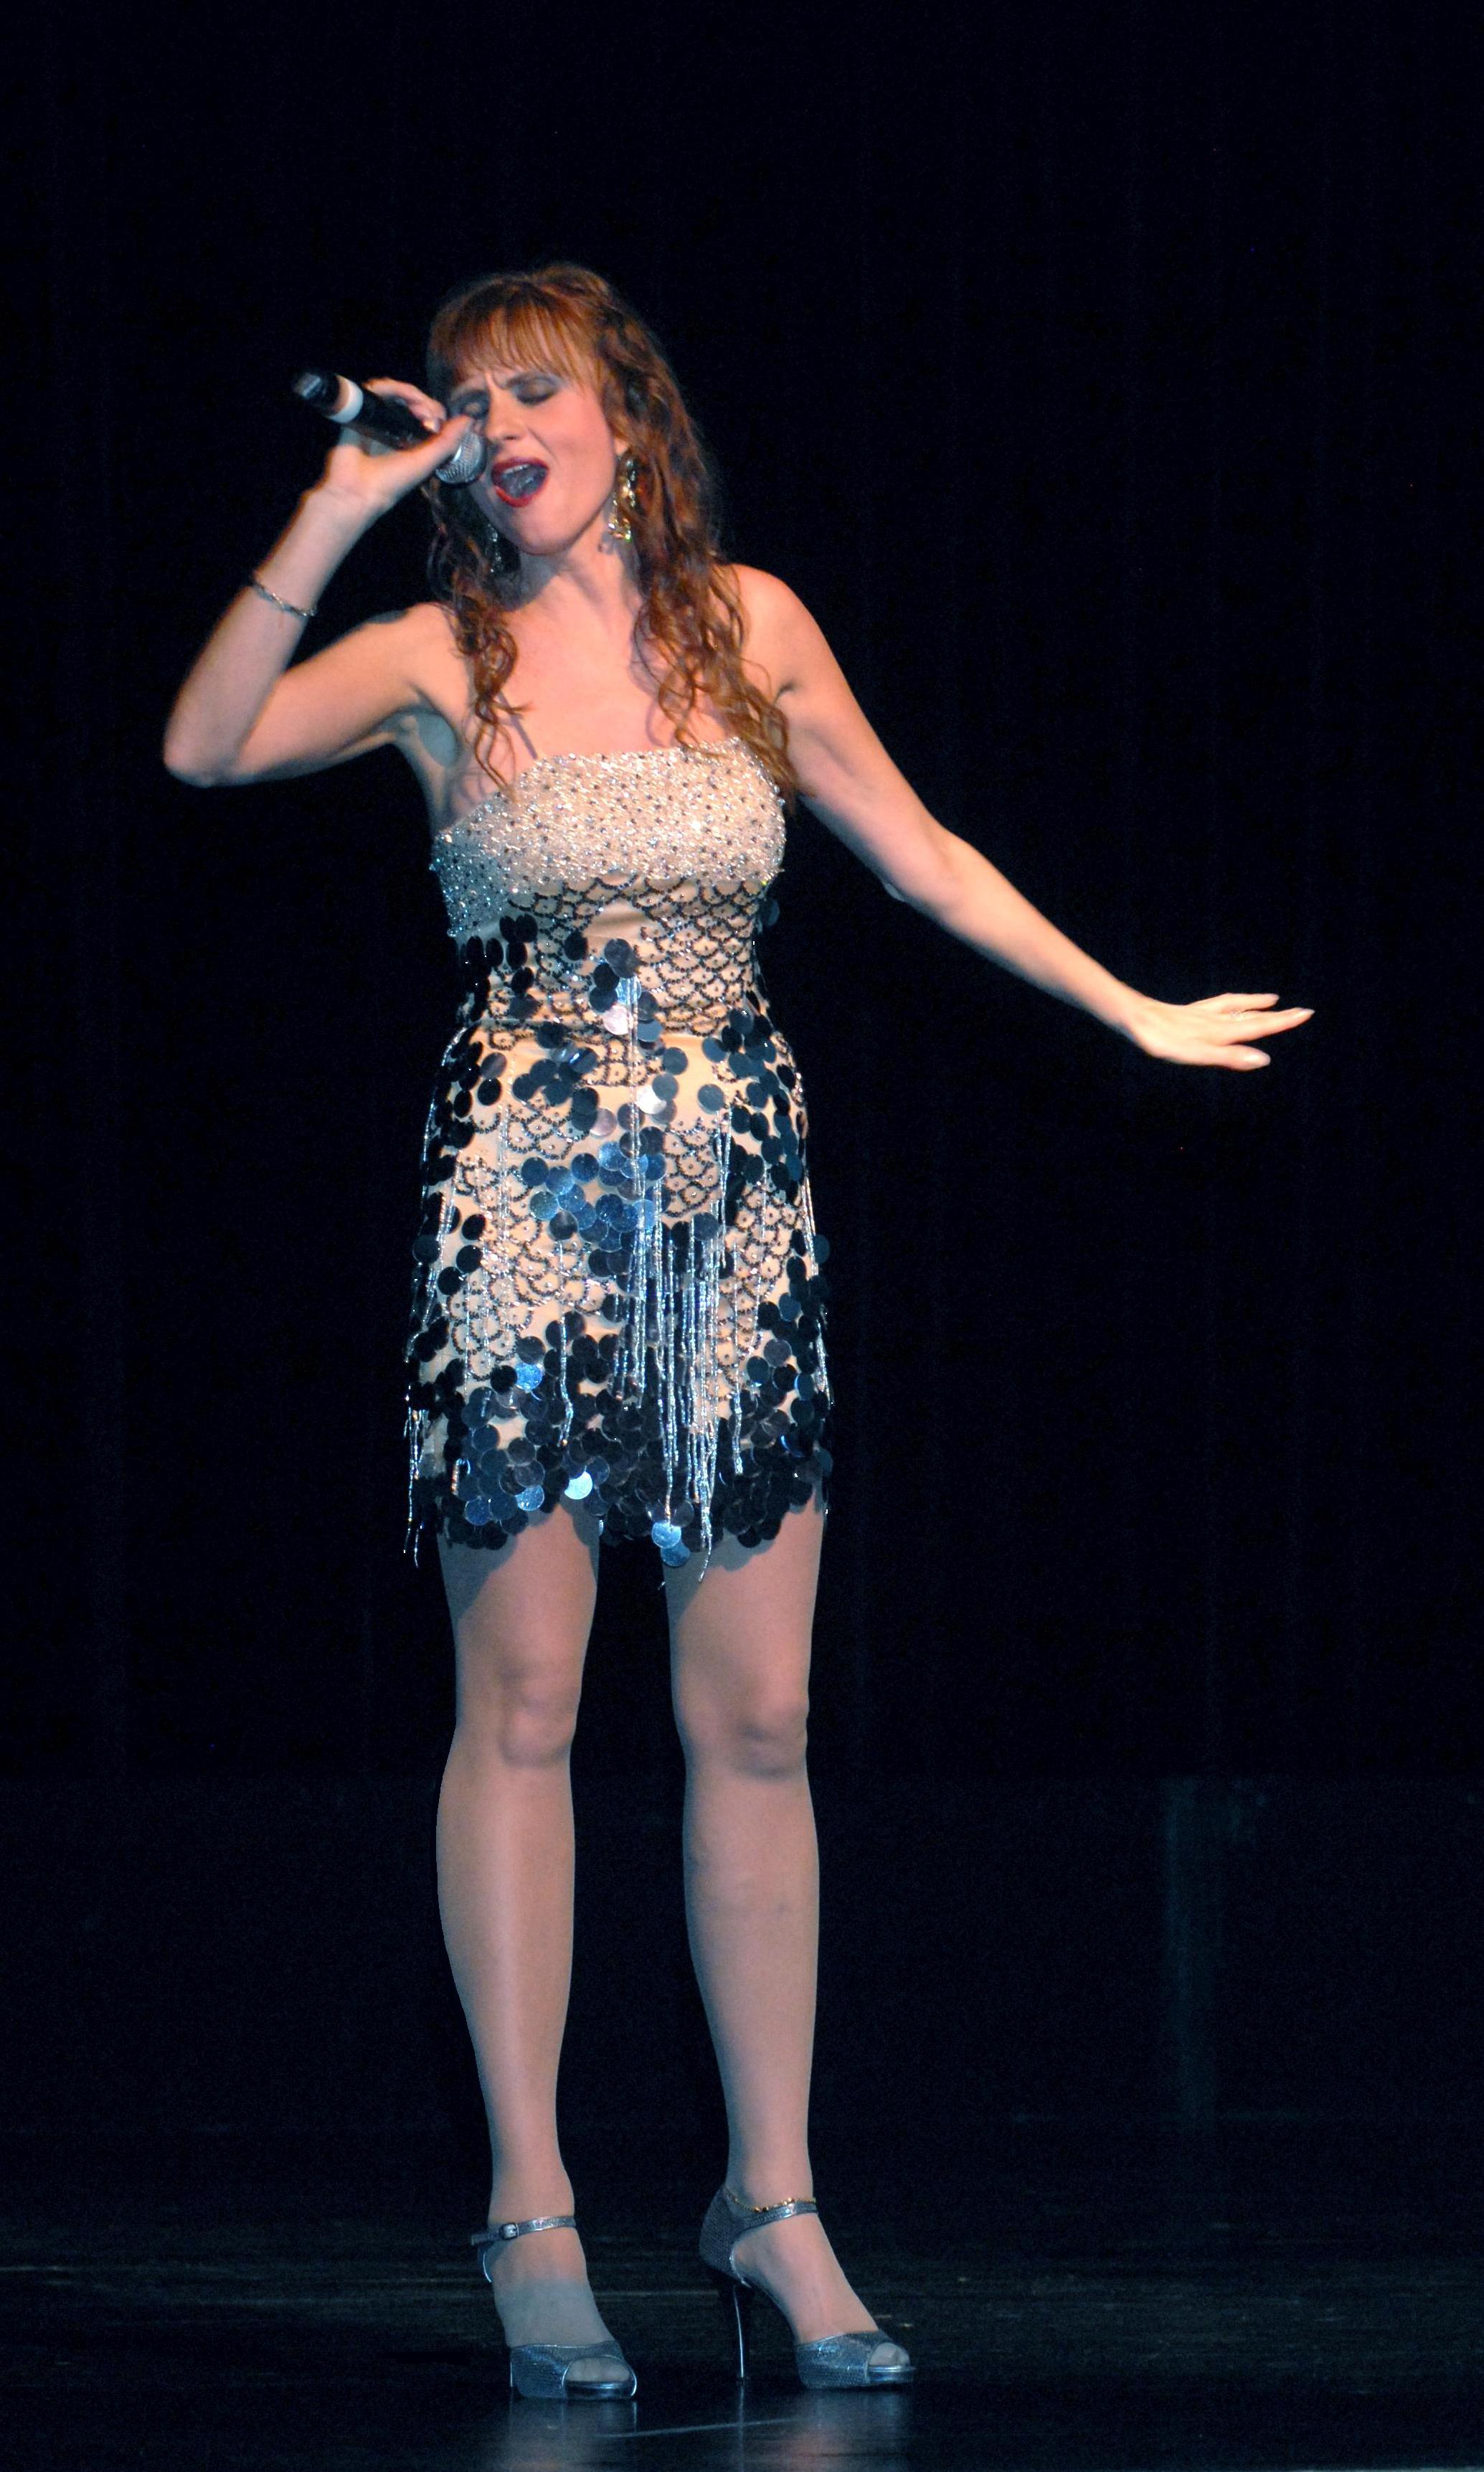 Violeta performing in Hollywood.